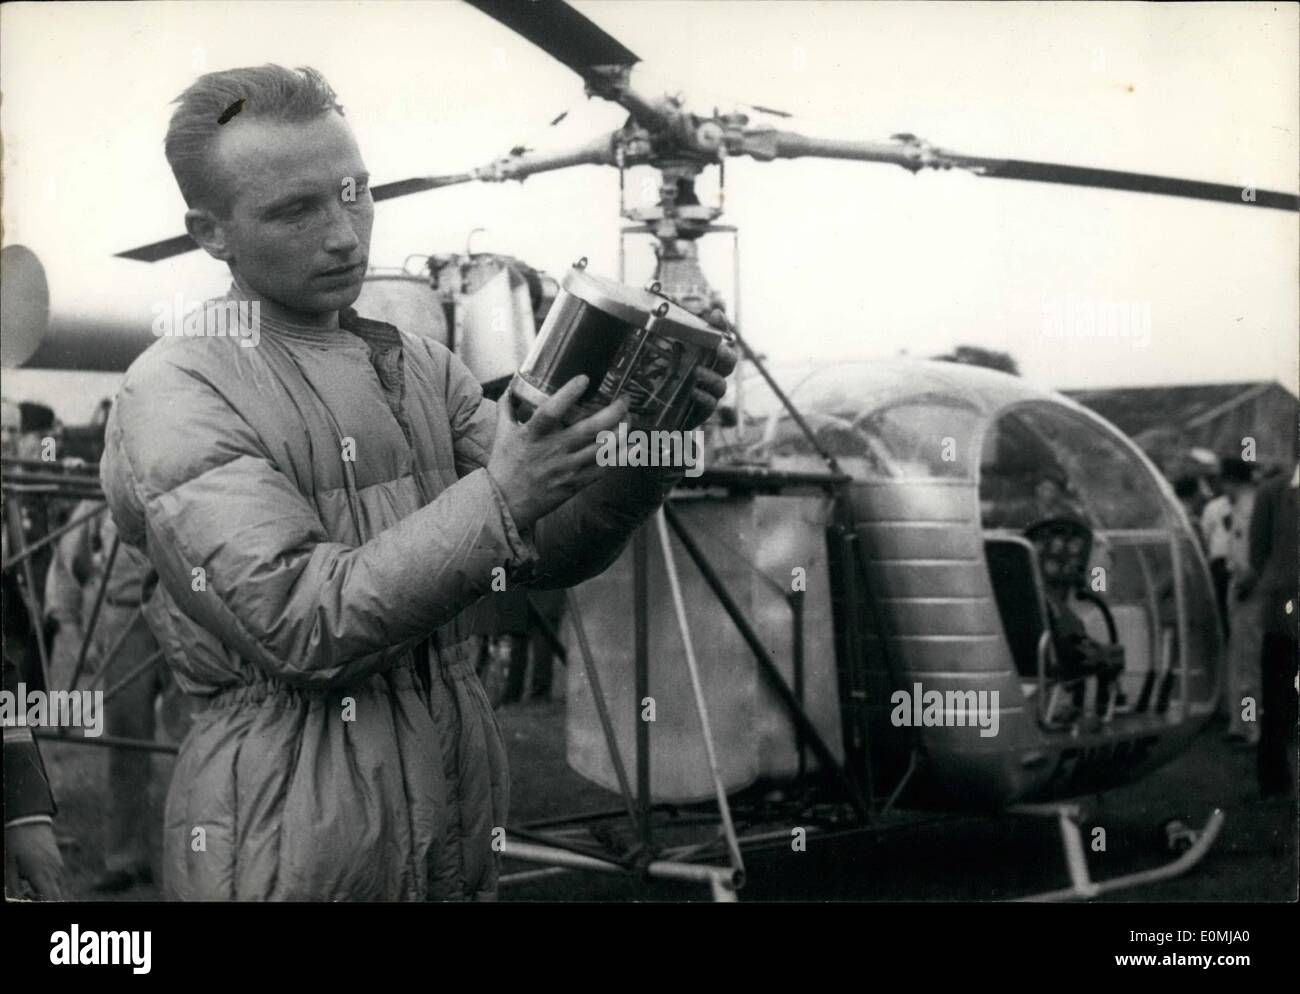 Juin 06, 1955 - pilote français du monde bat des Record d'altitude en hélicoptère Alouette II ; l'anglais Engineer-Pilot Jean Boulet examine son barographe après l'atterrissage à l'Aérodrome de Buc. Il a battu le record du monde de haute altitude Oe Après avoir atteint avec son hélicoptère ''Alouette II'' une hauteur de 8,260 mètres. Banque D'Images